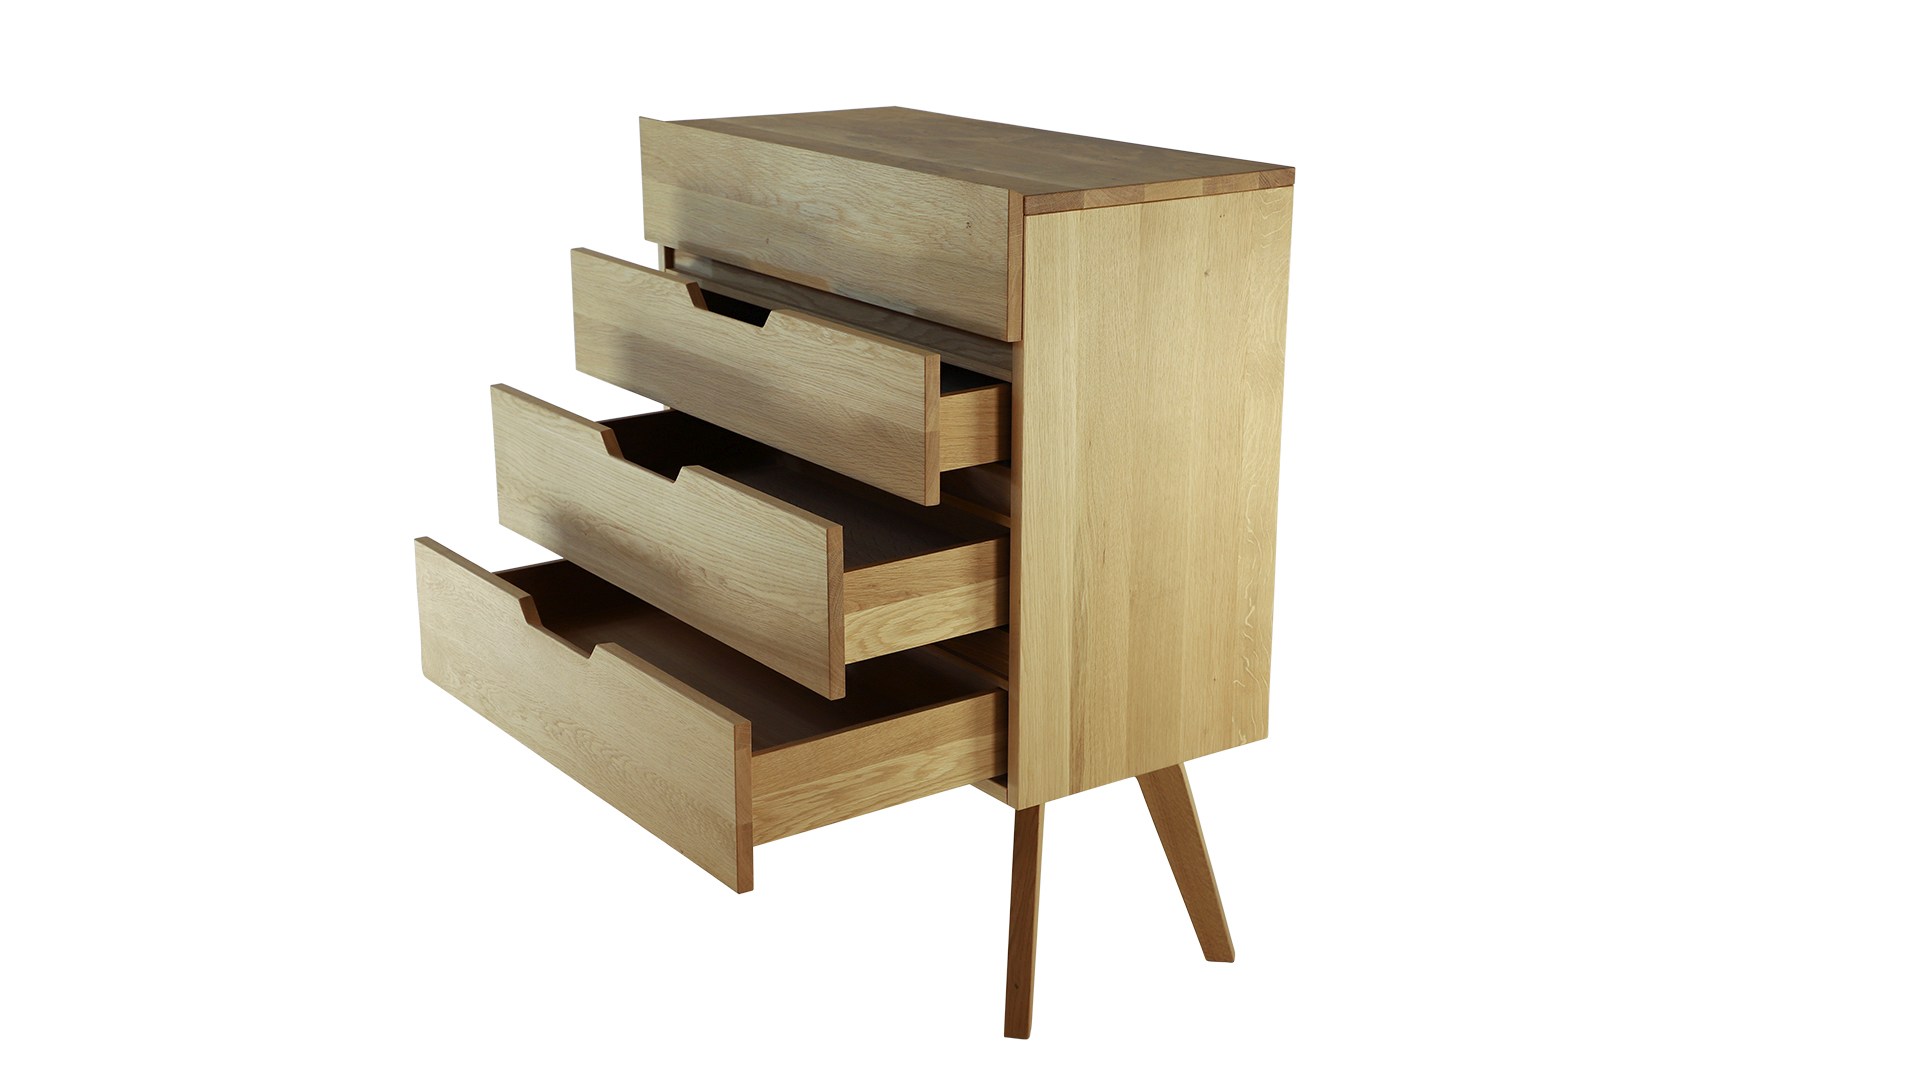 Das Kommode Dweller im Skandinavisch Design verfügt über vier Schubladen. Gefertigt wurde es aus Eichenholz. Designet wurde das Sideboard von der Marke Jan Kurtz.